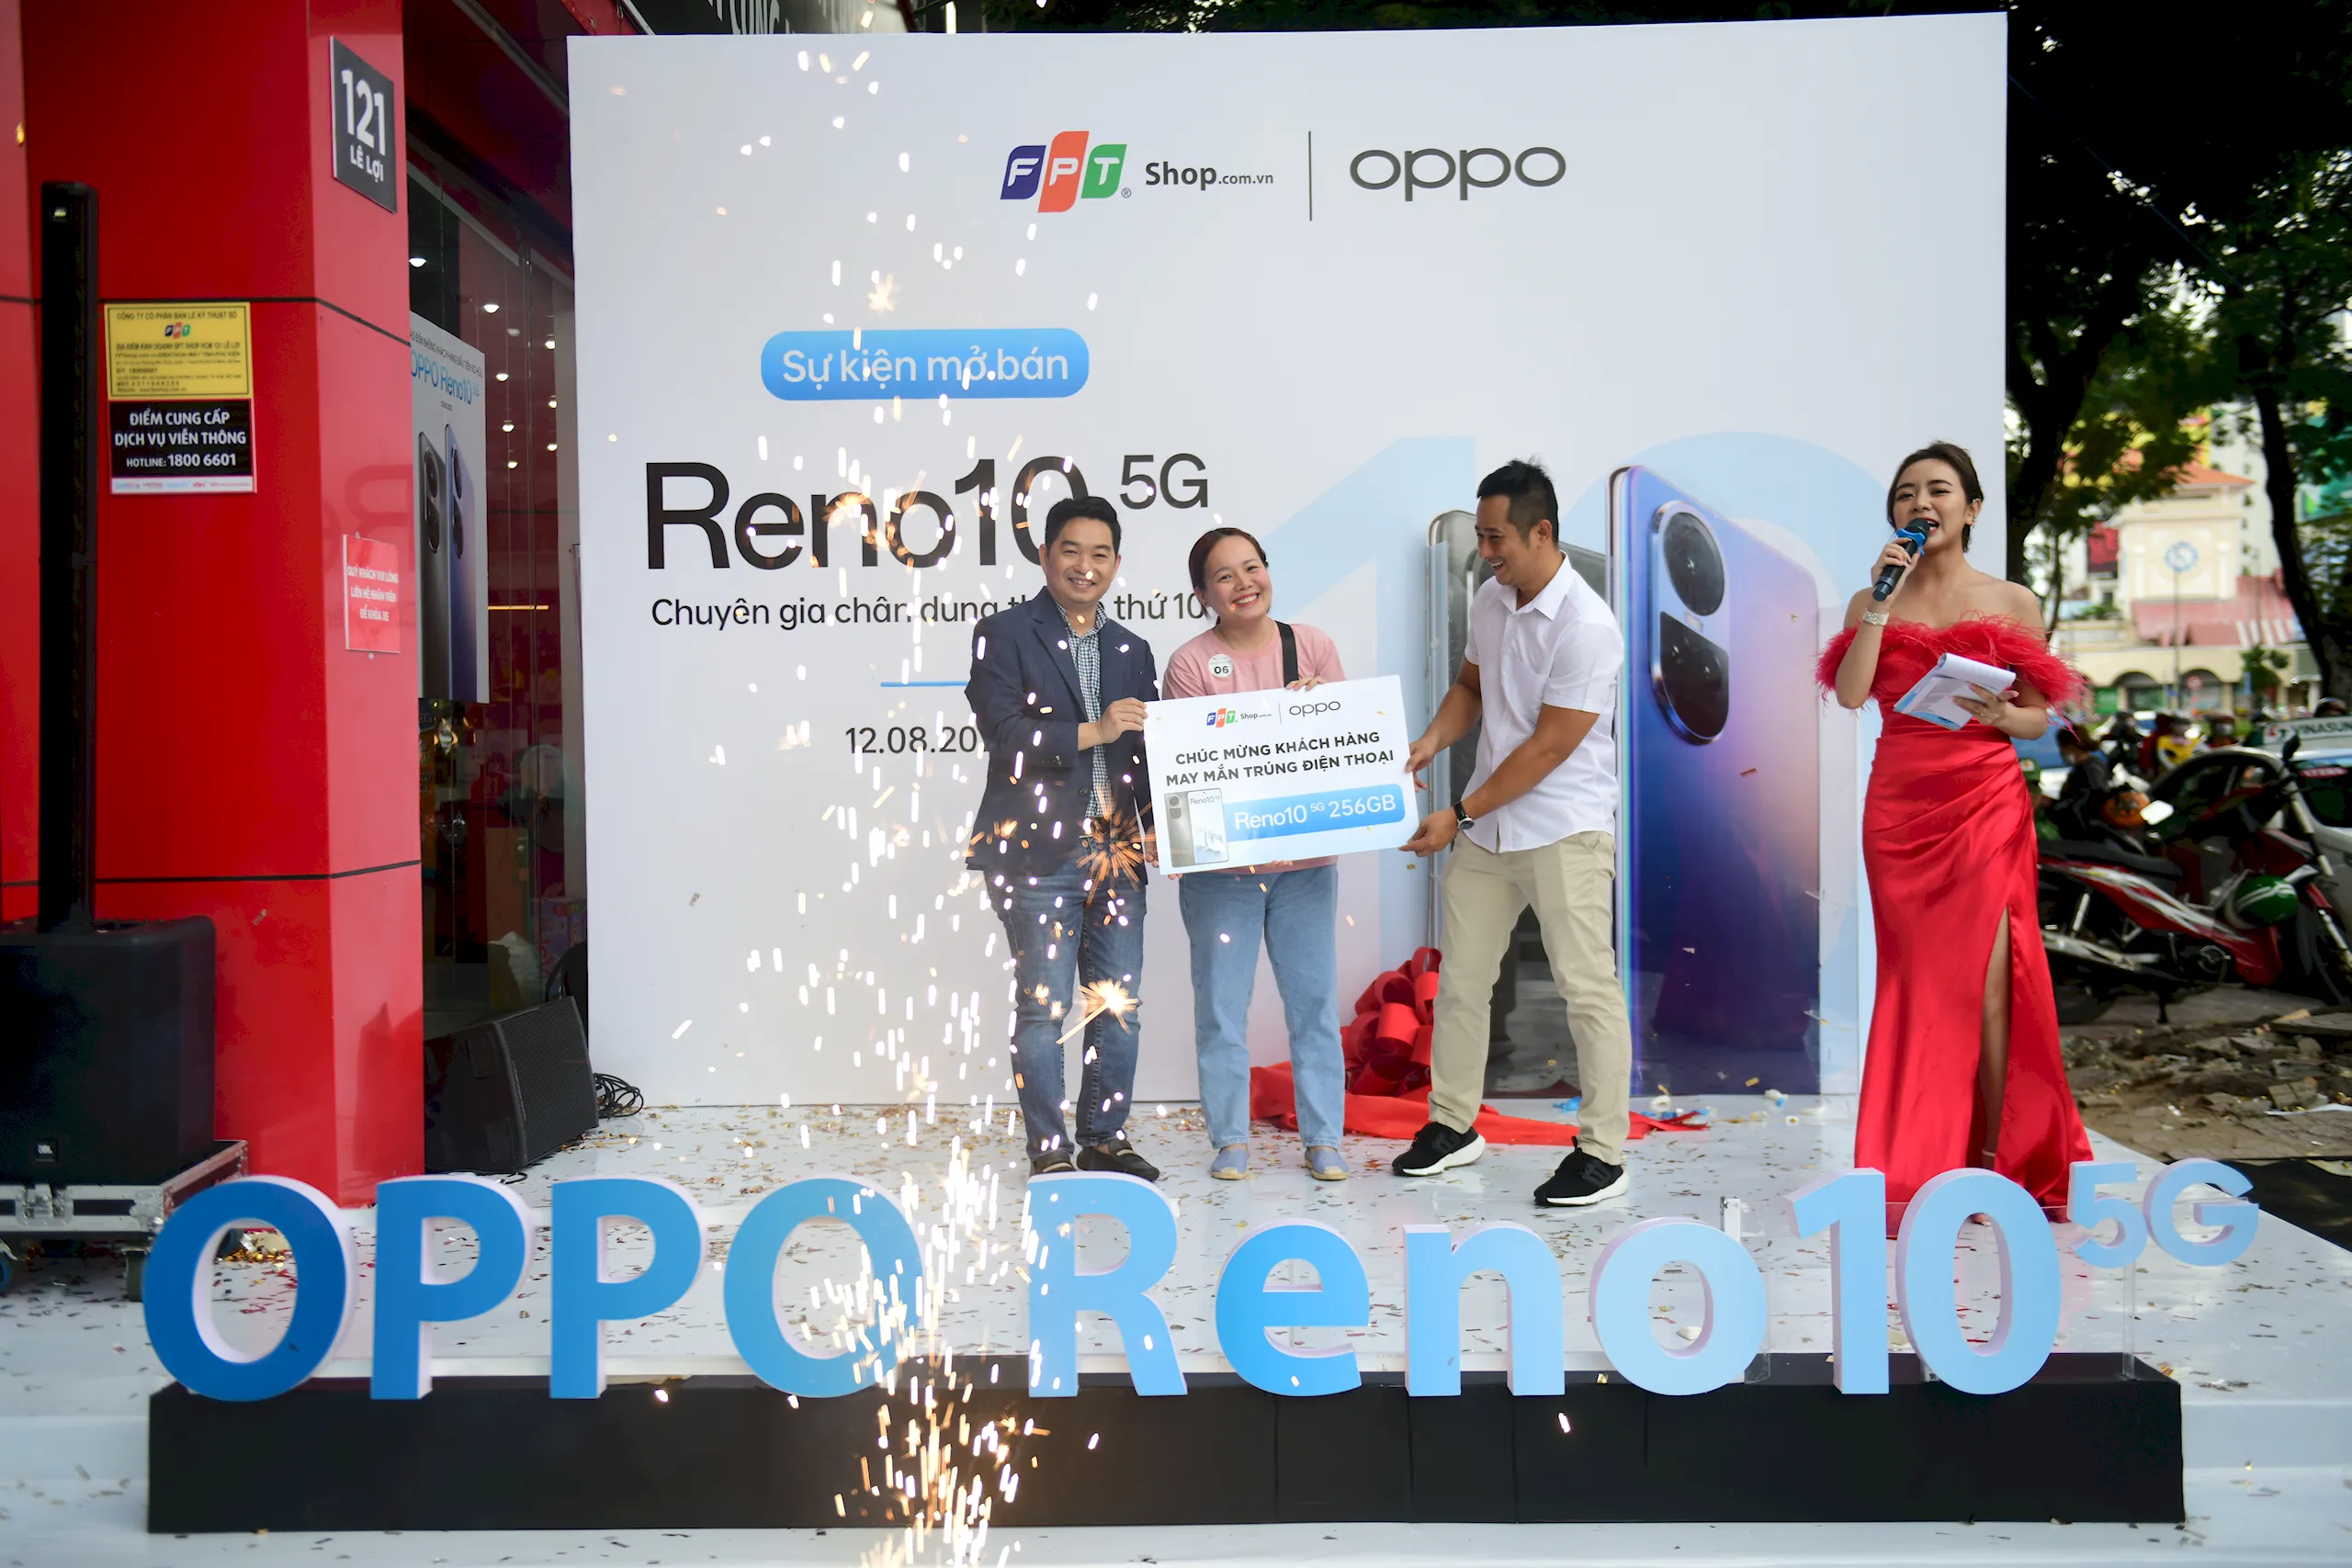 OPPO Reno10 5G 256GB chính thức mở bán tại FPT Shop